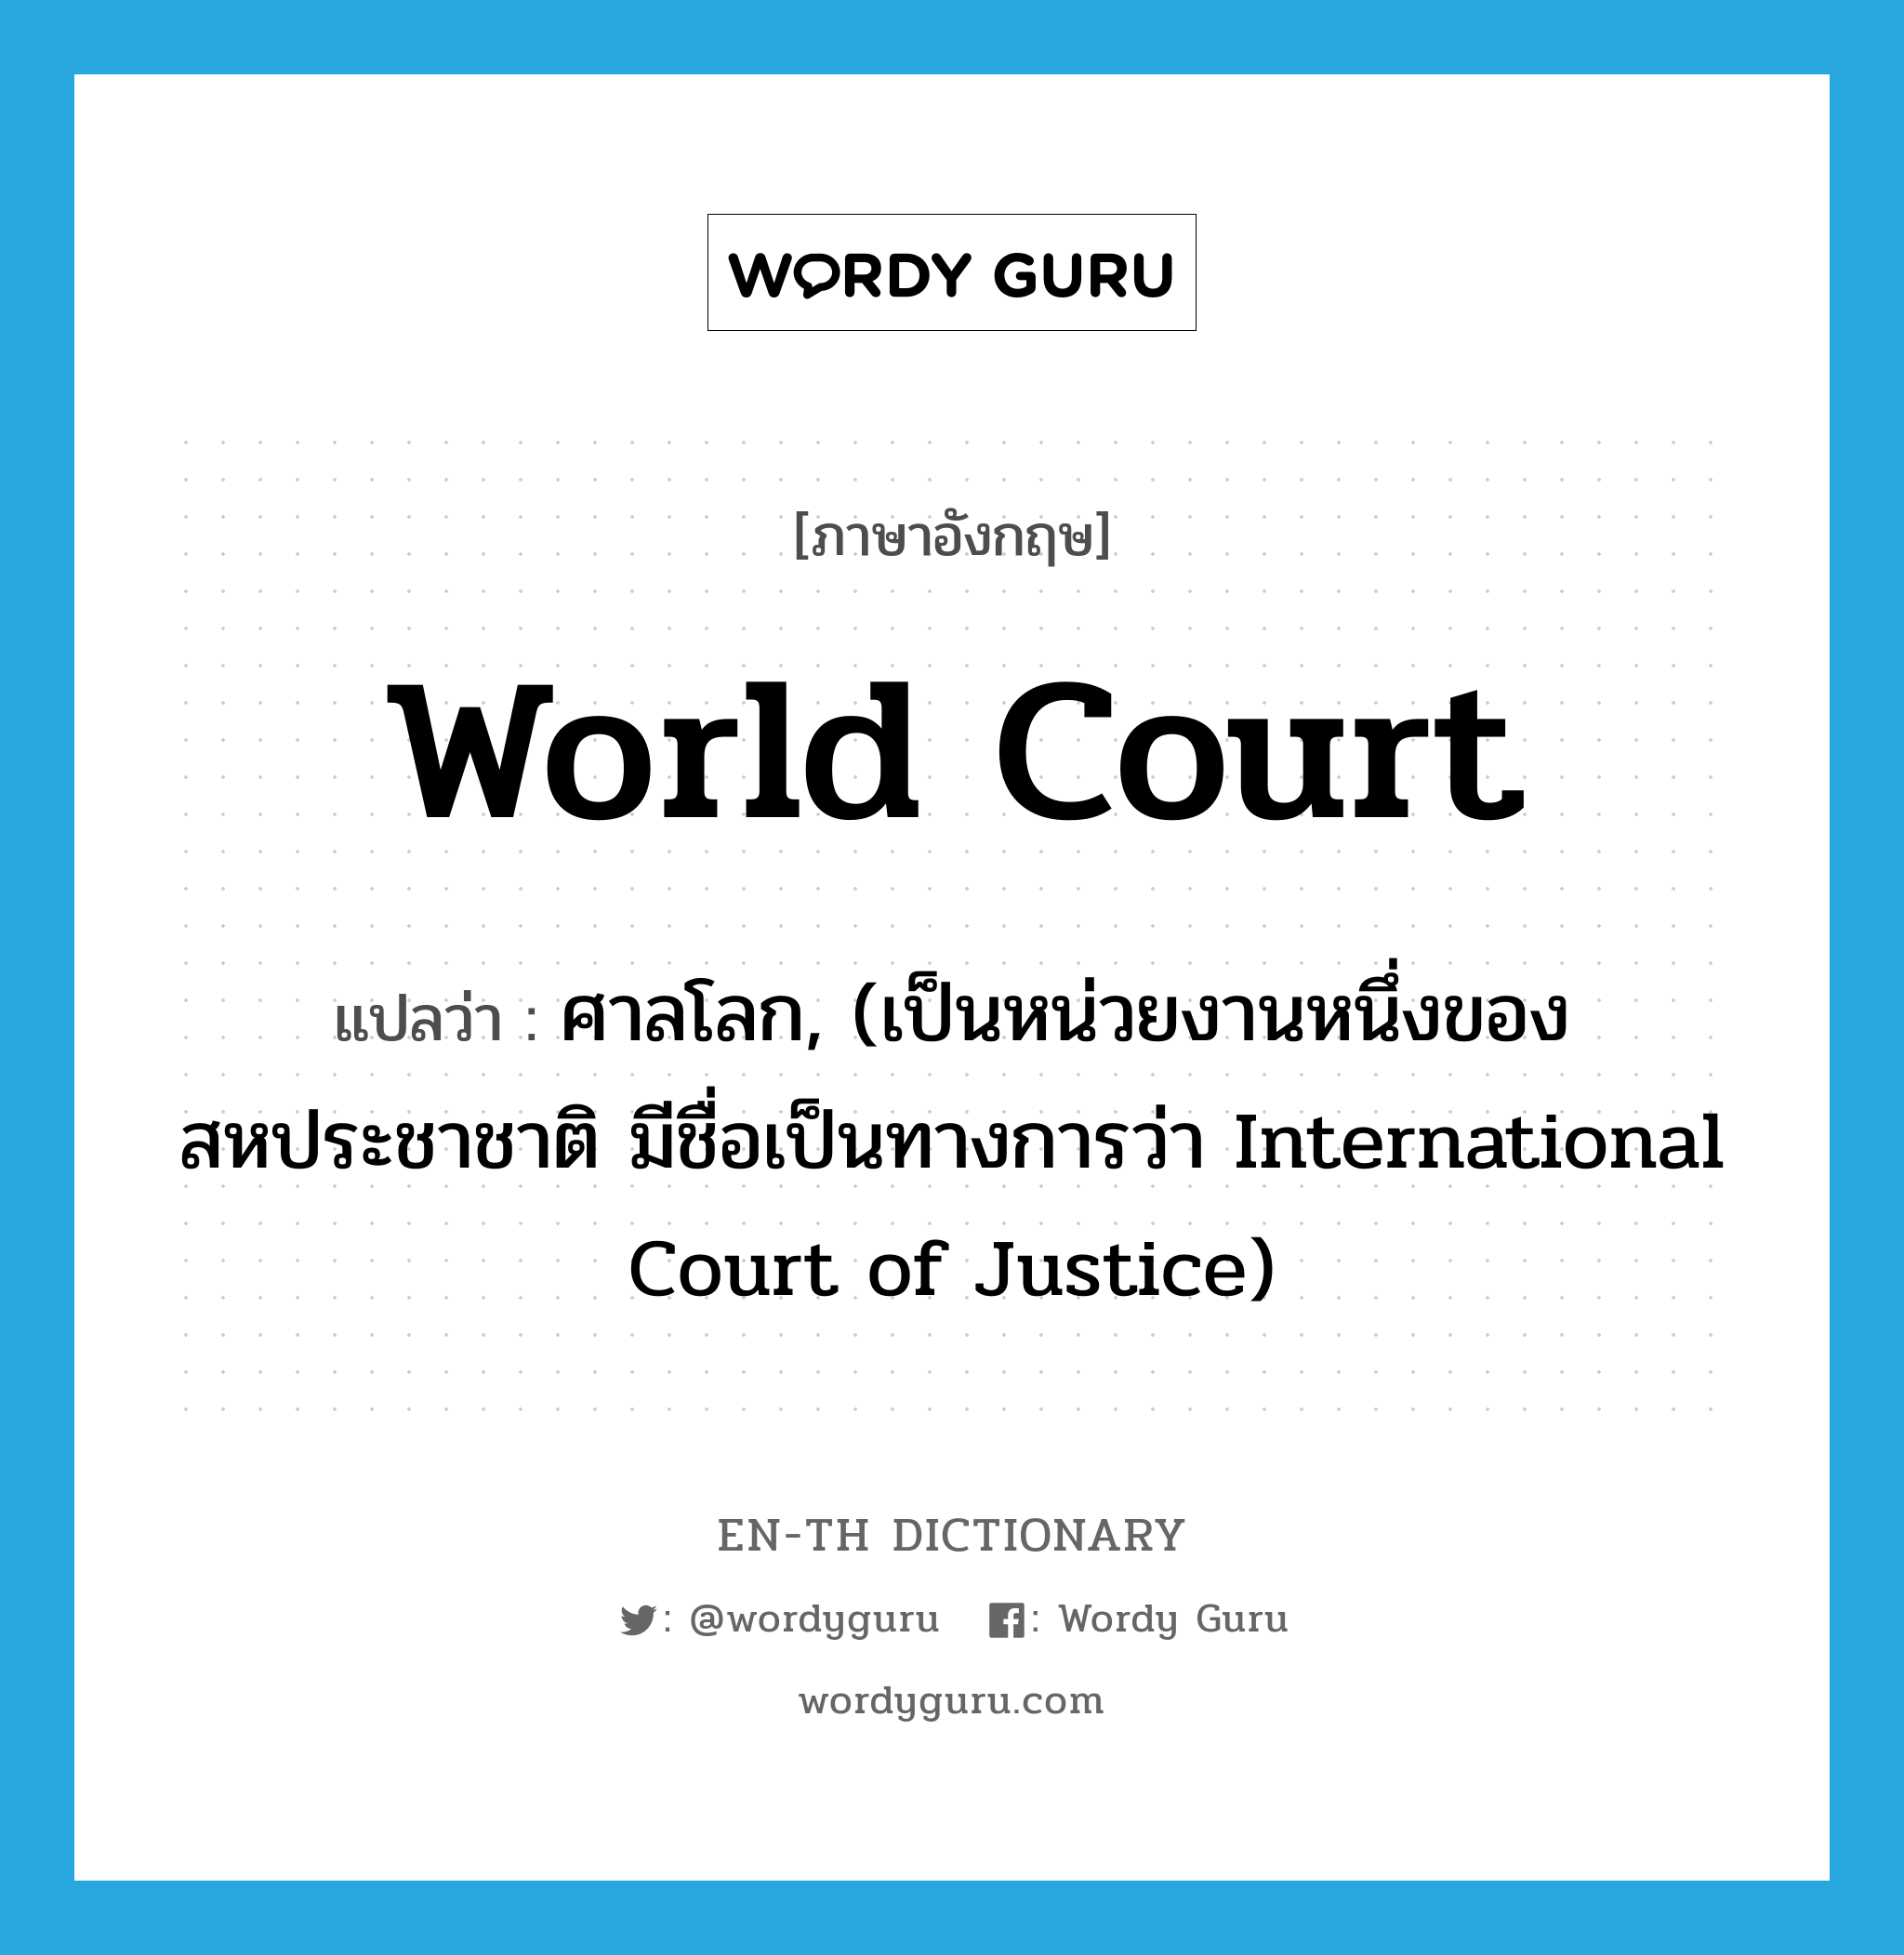 ศาลโลก, (เป็นหน่วยงานหนึ่งของสหประชาชาติ มีชื่อเป็นทางการว่า International Court of Justice) ภาษาอังกฤษ?, คำศัพท์ภาษาอังกฤษ ศาลโลก, (เป็นหน่วยงานหนึ่งของสหประชาชาติ มีชื่อเป็นทางการว่า International Court of Justice) แปลว่า World Court ประเภท N หมวด N